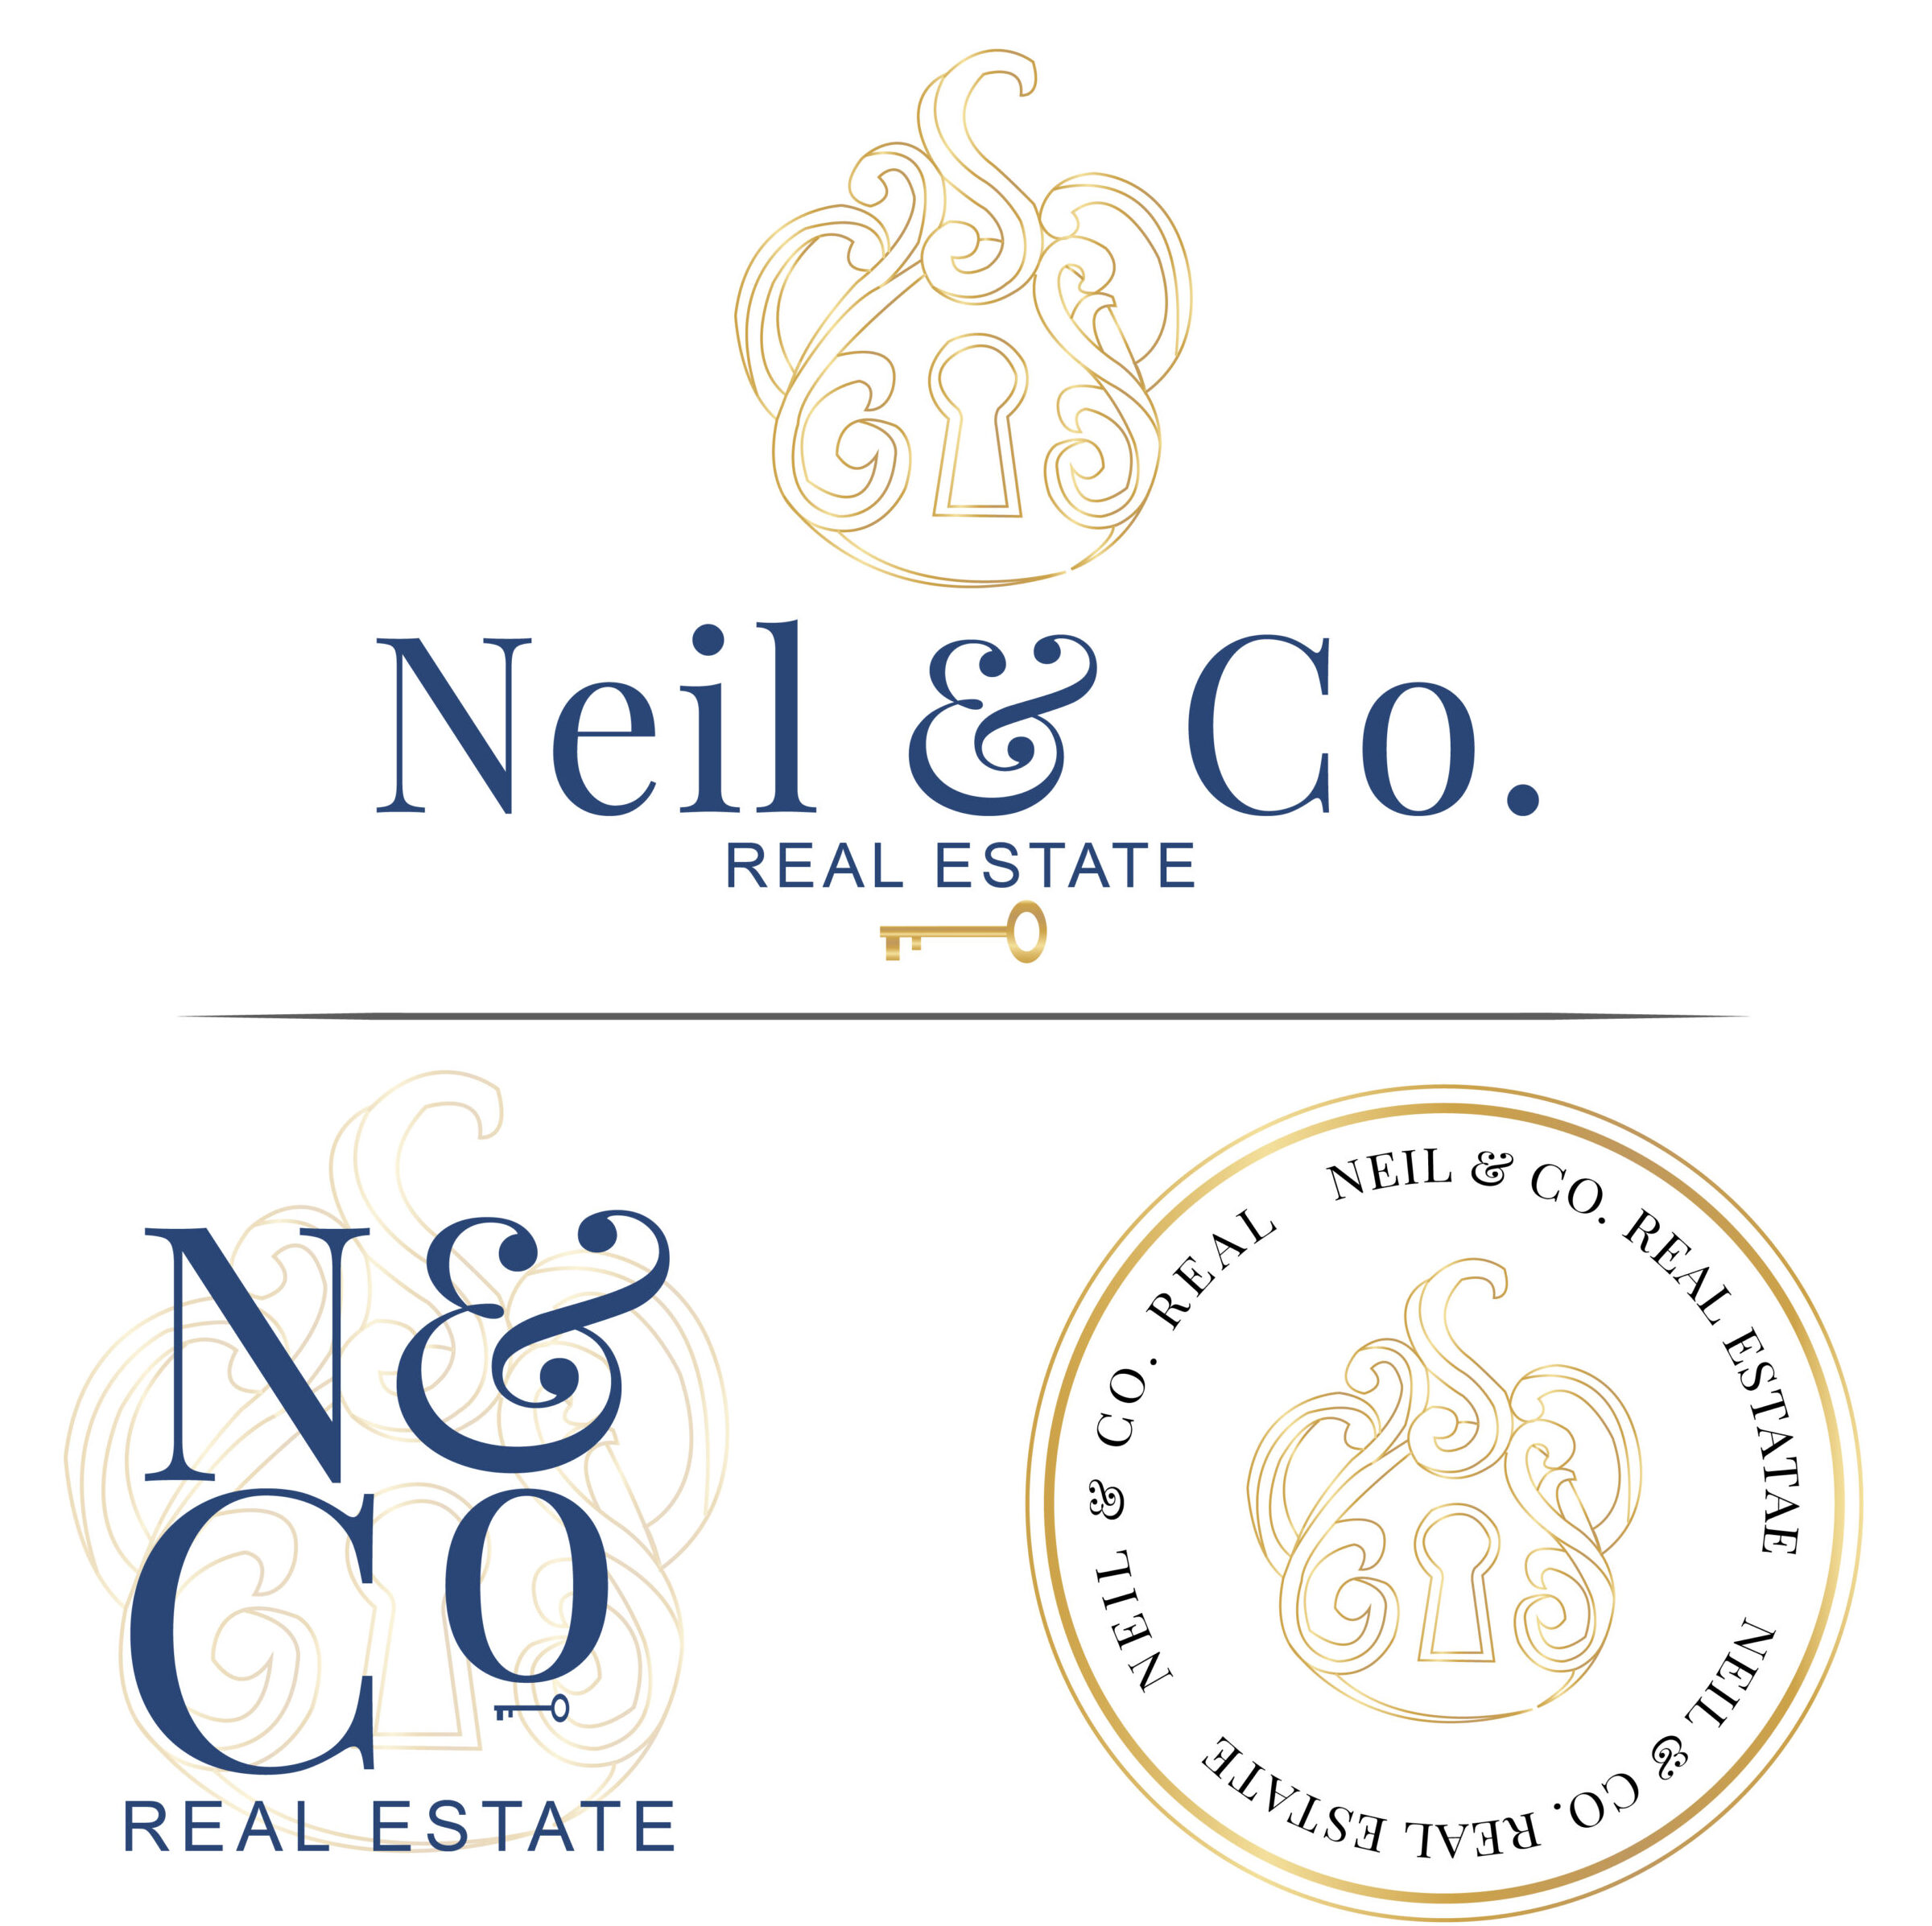 Neil-Co-Realestate-logo-branding-Board